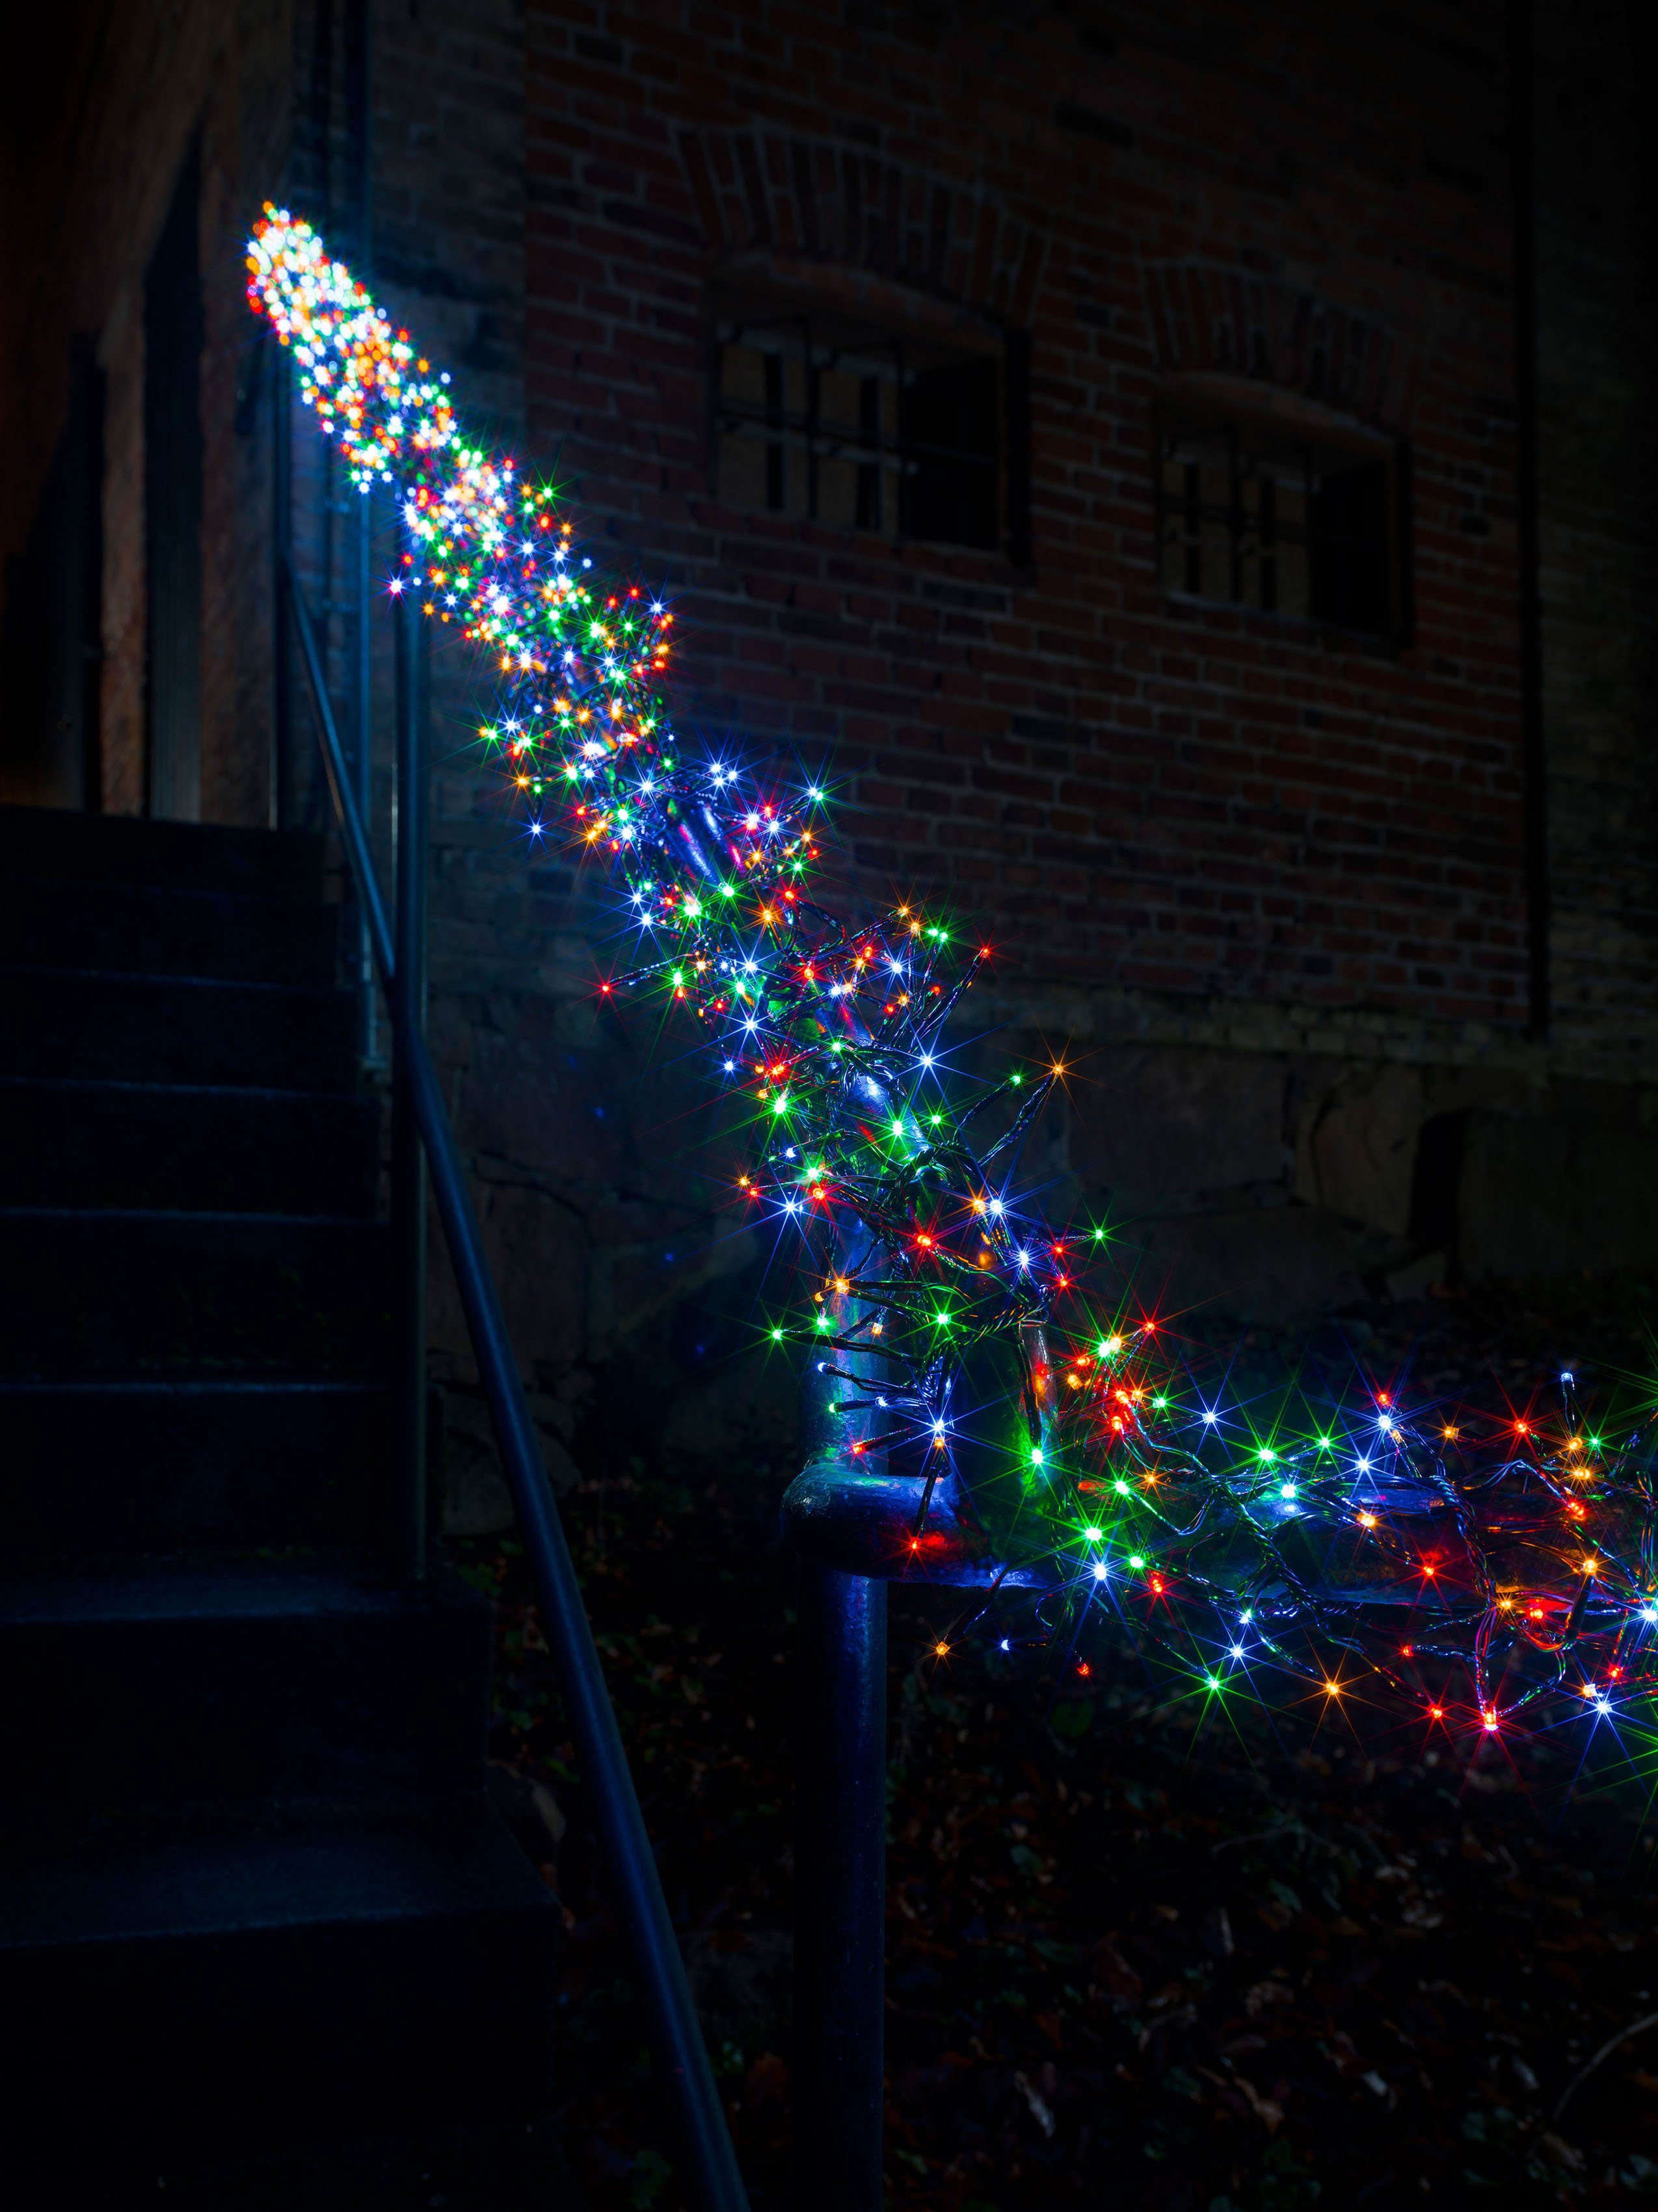 KONSTSMIDE LED-Lichterkette Weihnachtsdeko aussen, 960-flammig, Micro LED  Büschellichterkette Cluster, mit 8 Funktionen, 960 Dioden | Lichtschläuche